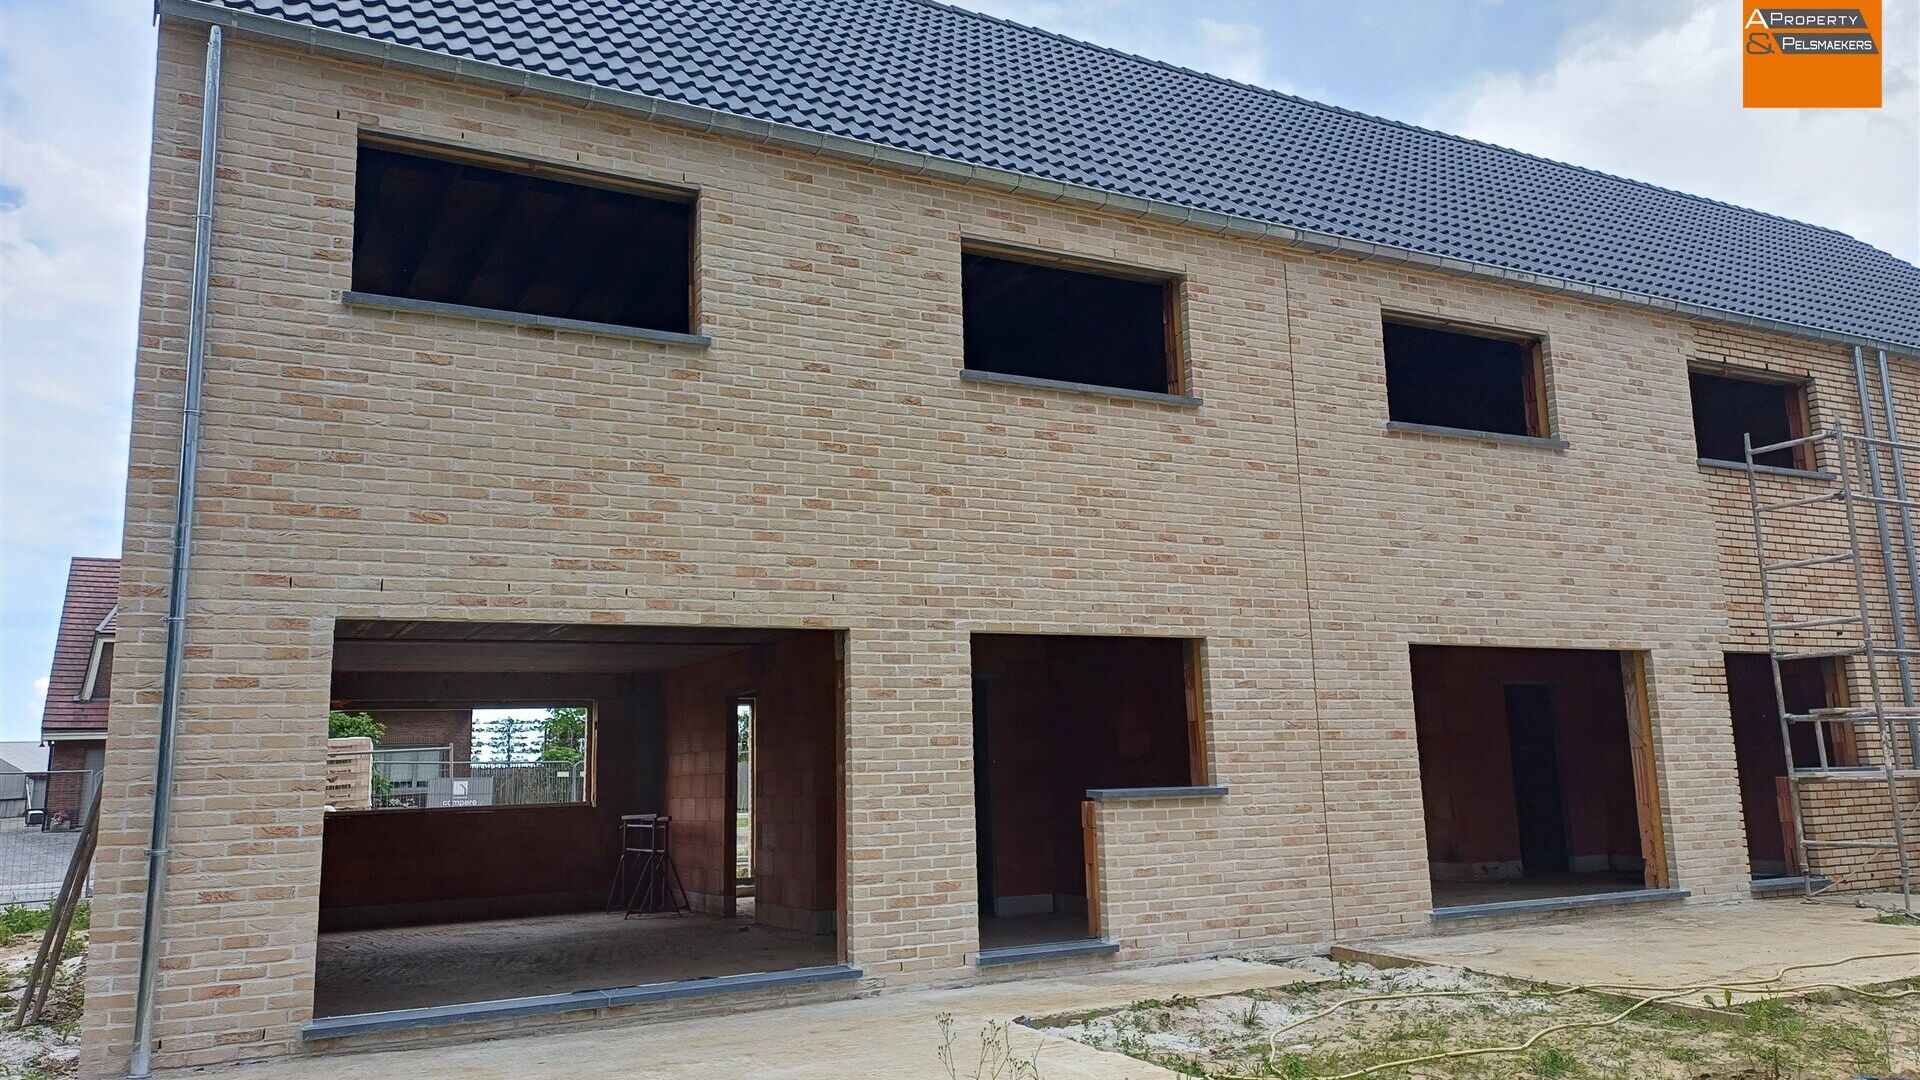 House for sale in NOSSEGEM